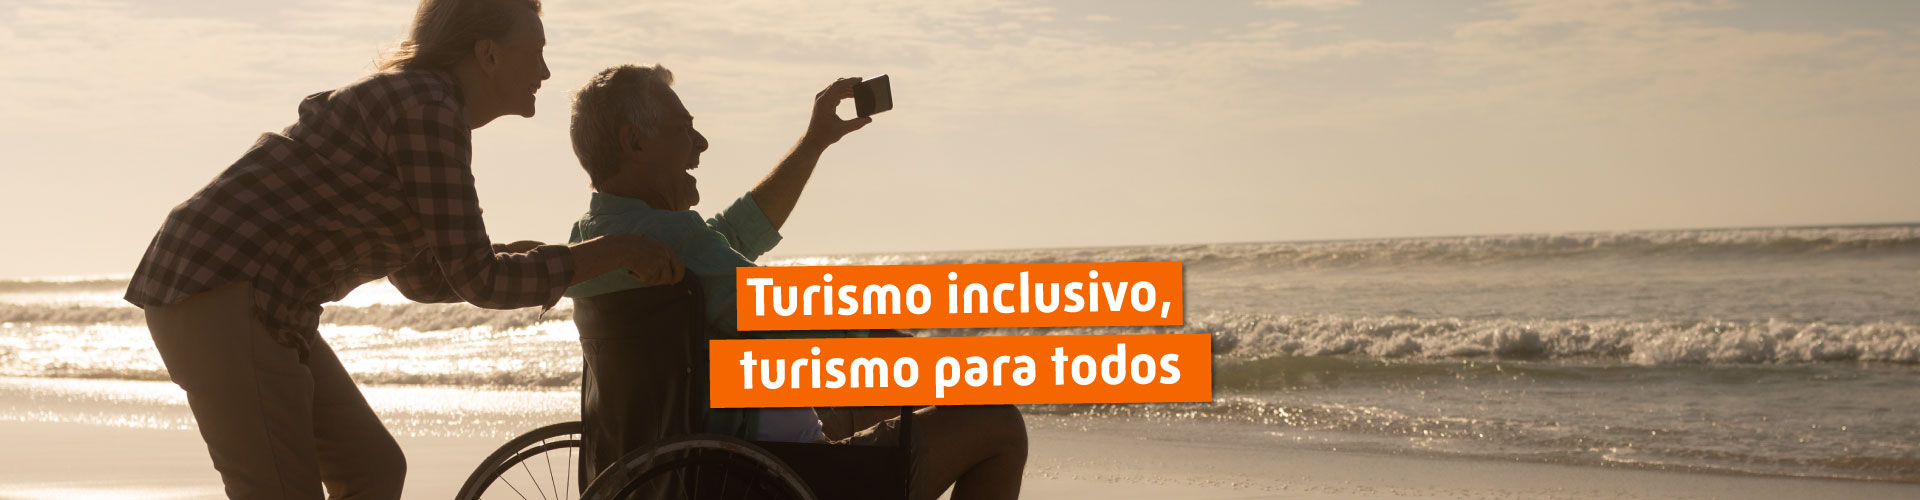 Turismo inclusivo